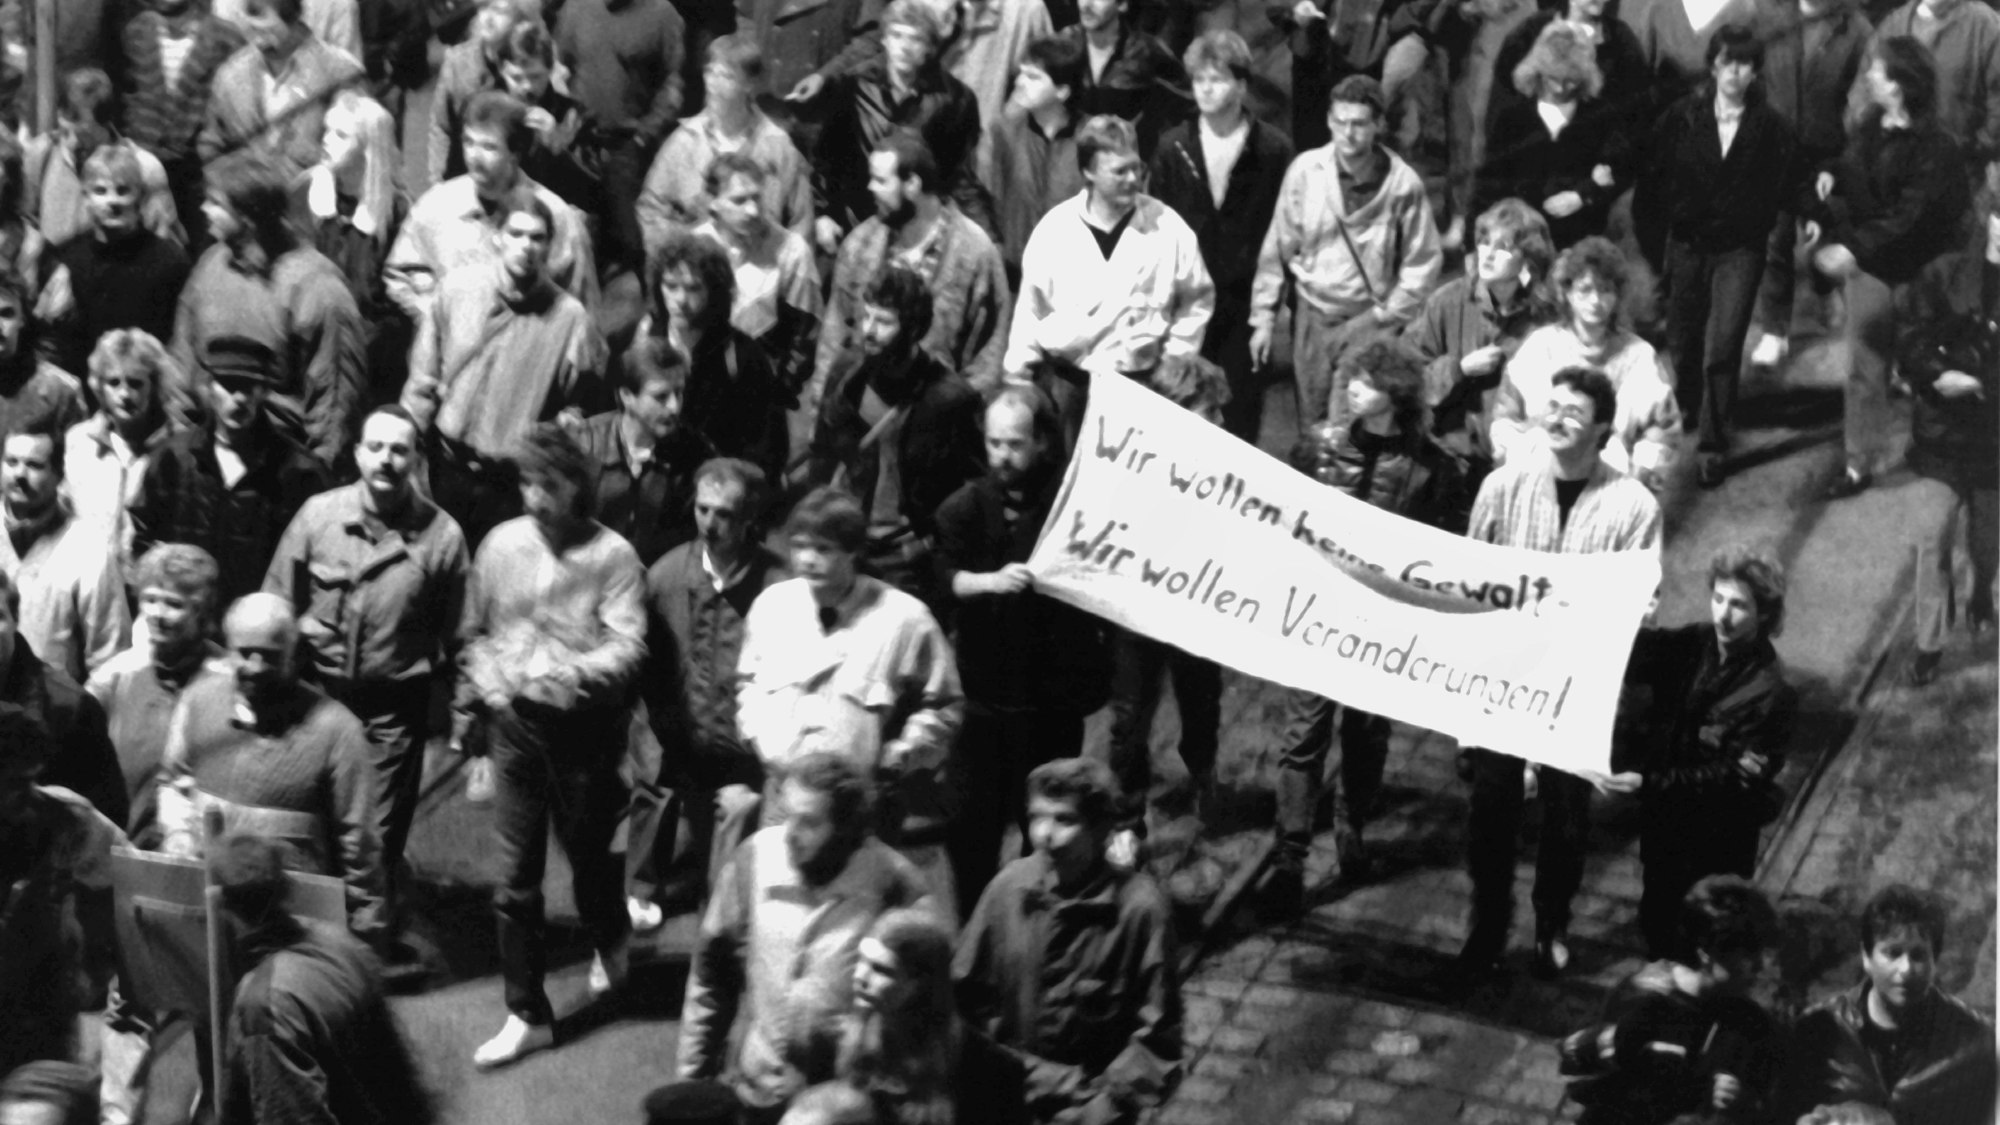 „Wir wollen keine Gewalt! Wir wollen Veränderungen!“ ist auf einem Transparent zu lesen, das Demonstranten bei der Montagsdemonstration am 9. Oktober 1989 in Leipzig mit sich führen.